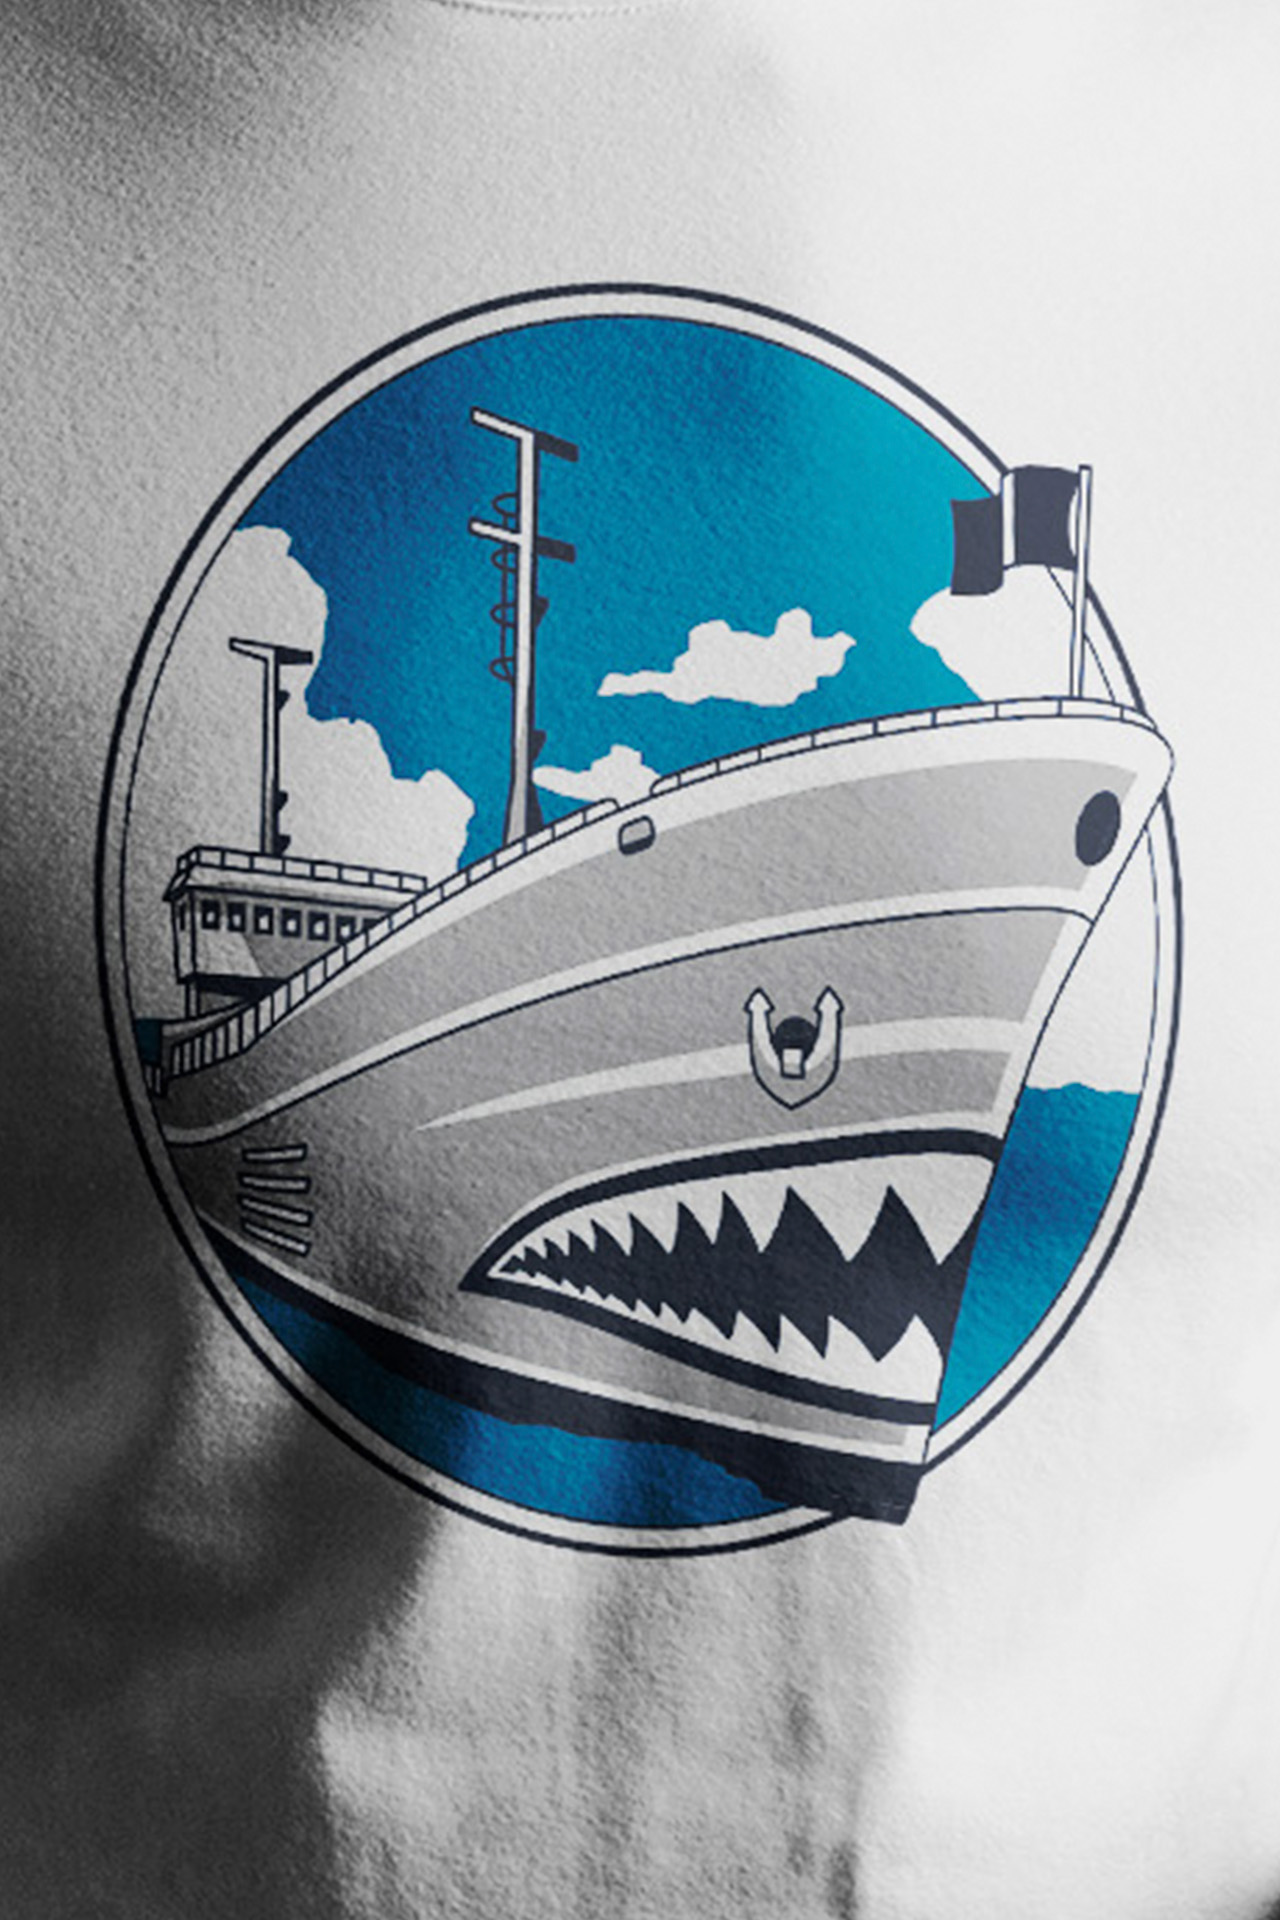 Ships of Sea Shepherd